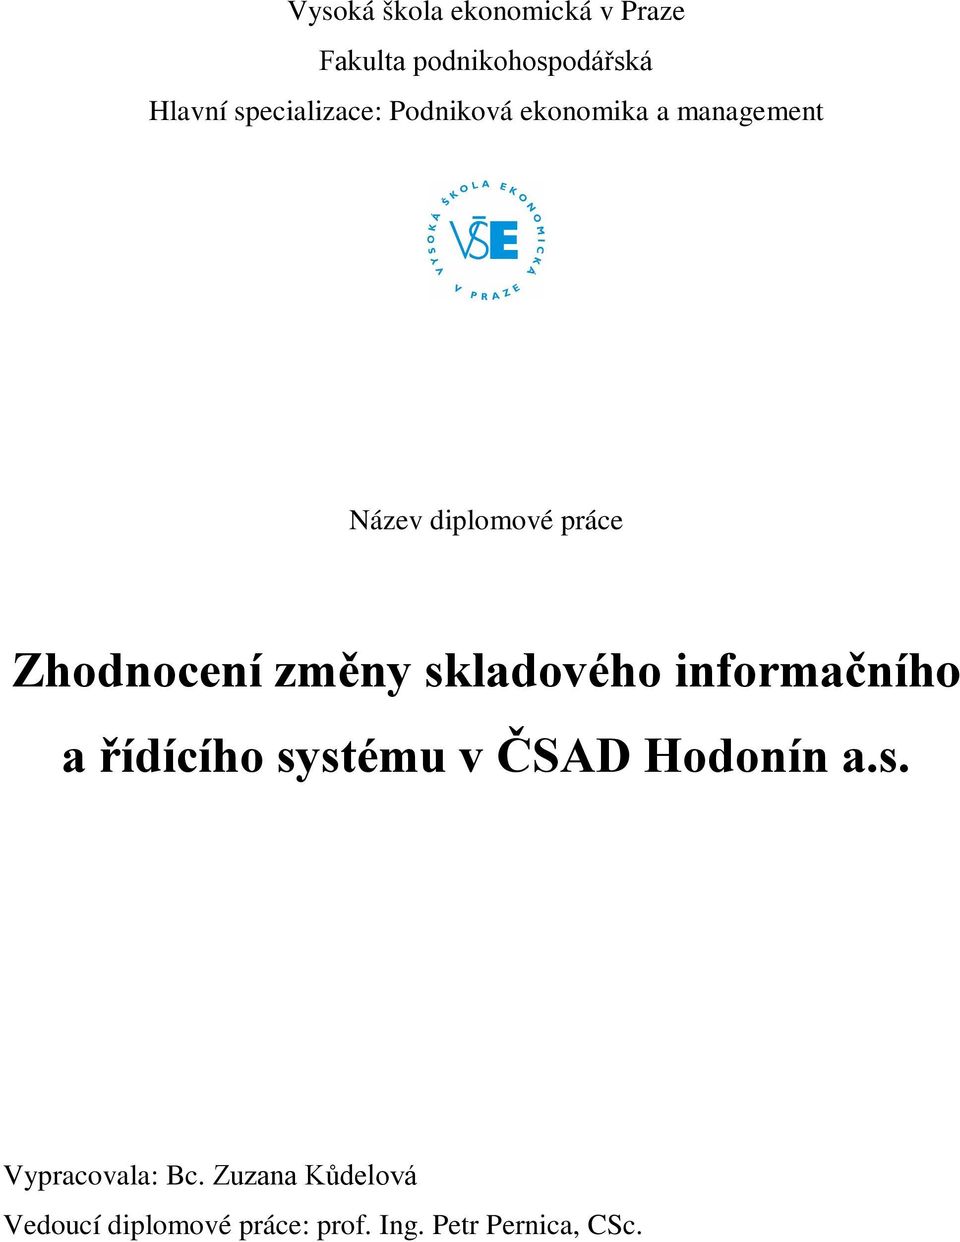 Zhodnocení změny skladového informačního a řídícího systému v ČSAD Hodonín